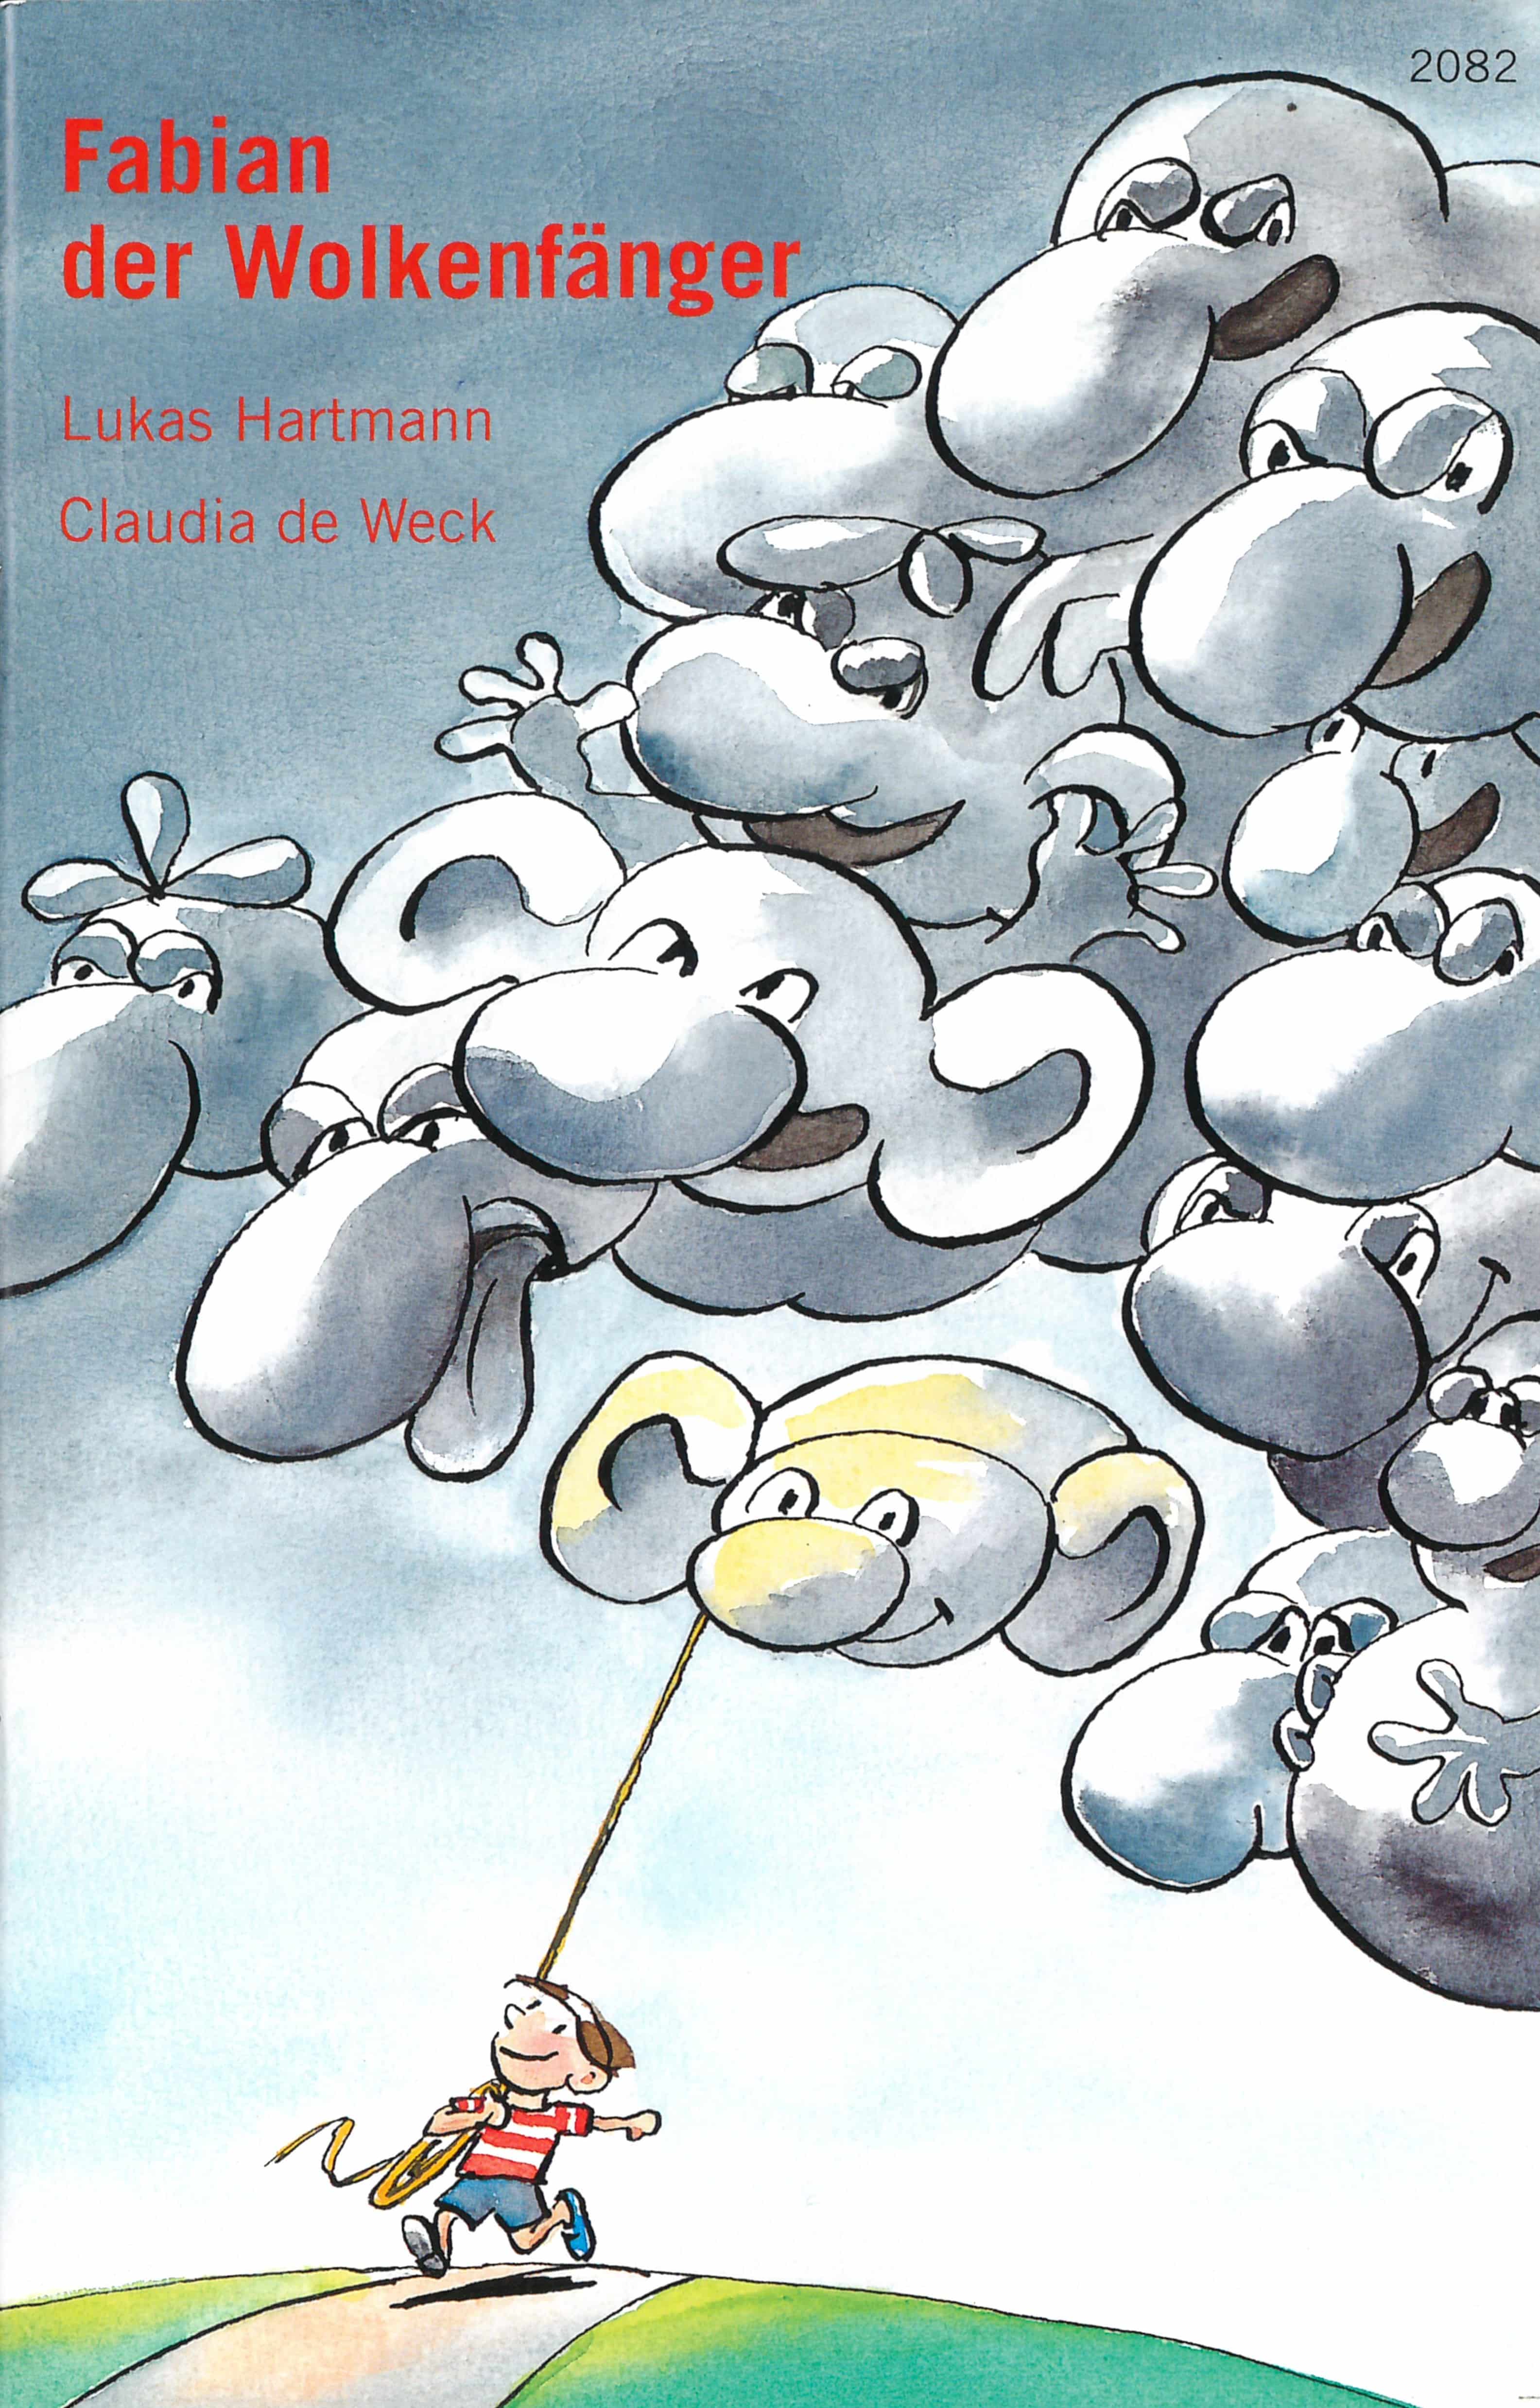 Fabian der Wolkenfaenger, ein Kinderbuch von Lukas Hartmann, Illustration von Claudia de Weck, SJW Verlag, Fantasy